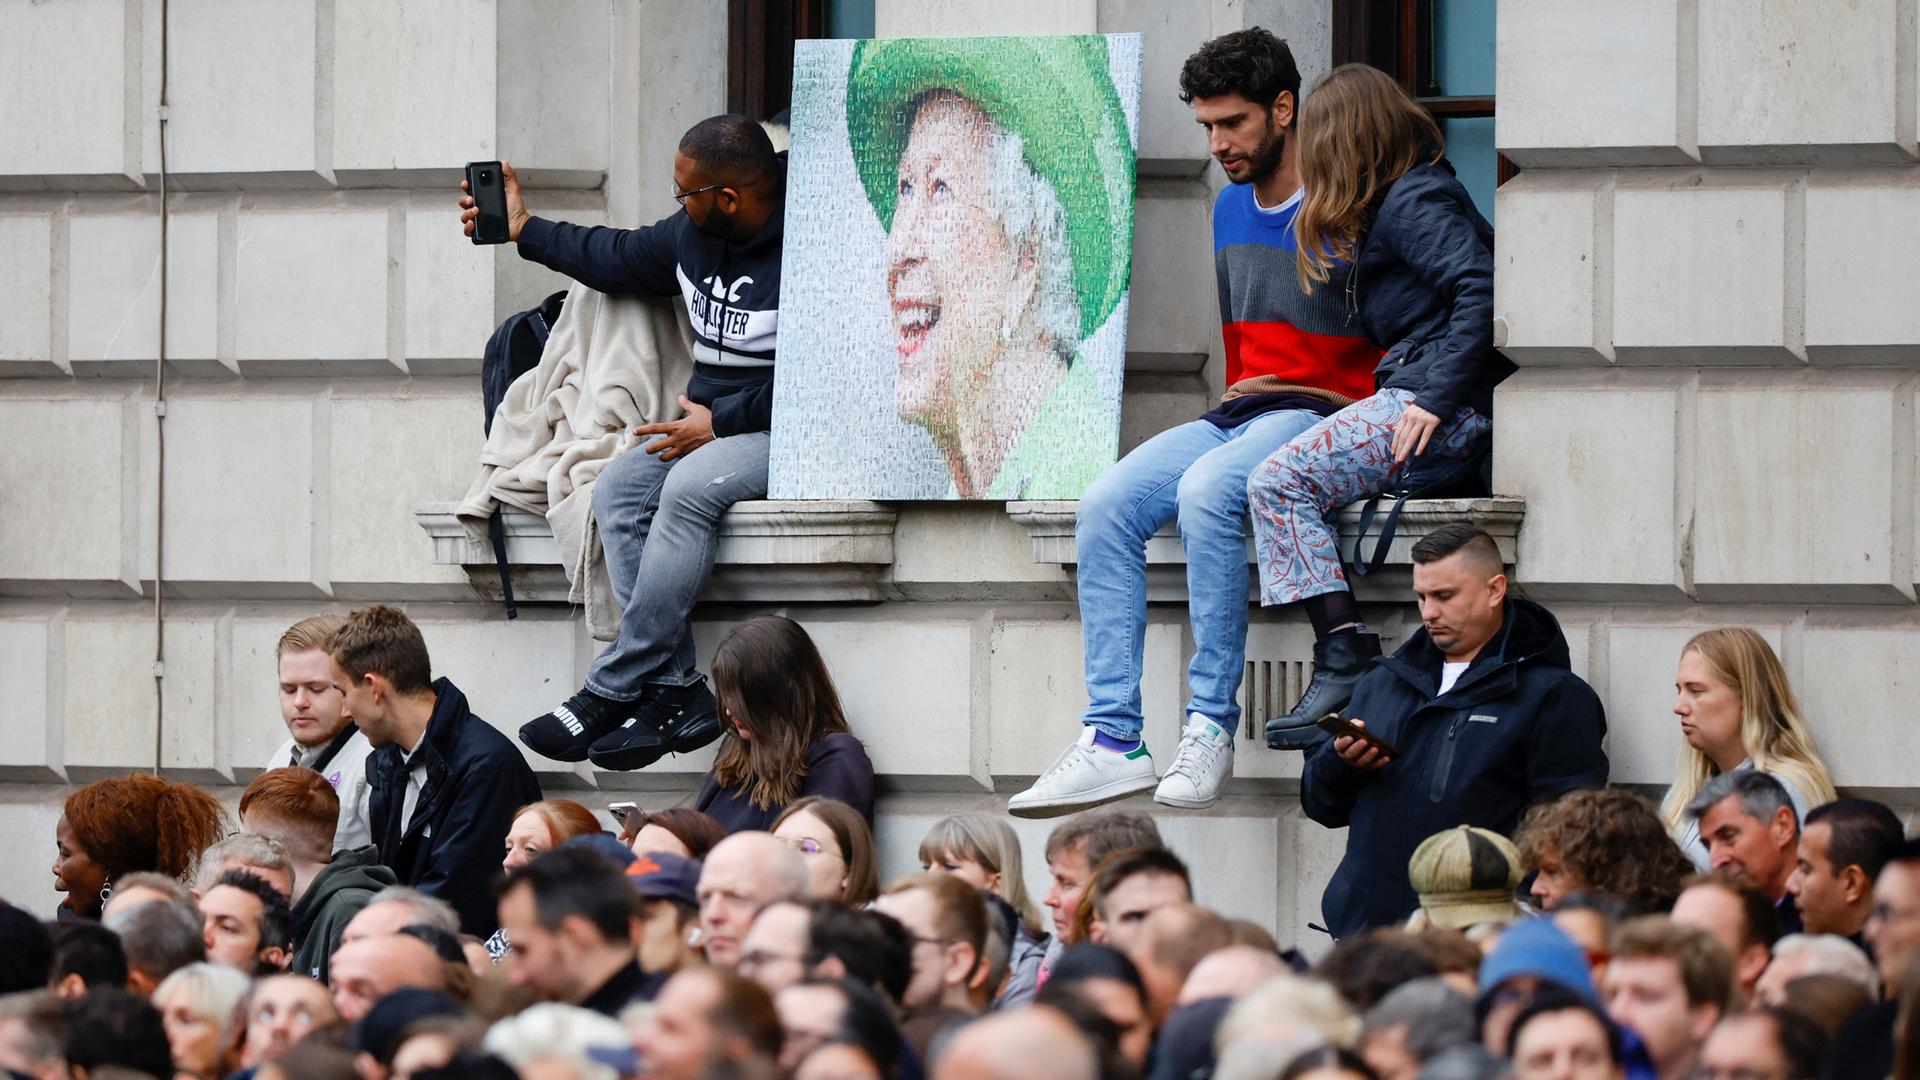 Zum Staatsbegräbnis von Queen Elizabeth II. drängen sich Menschen vor einem Gebäude, einige sitzen auf Fensterbänken, zwischen sich ein etwa 1x1 Meter großes Poprträt der Königin.